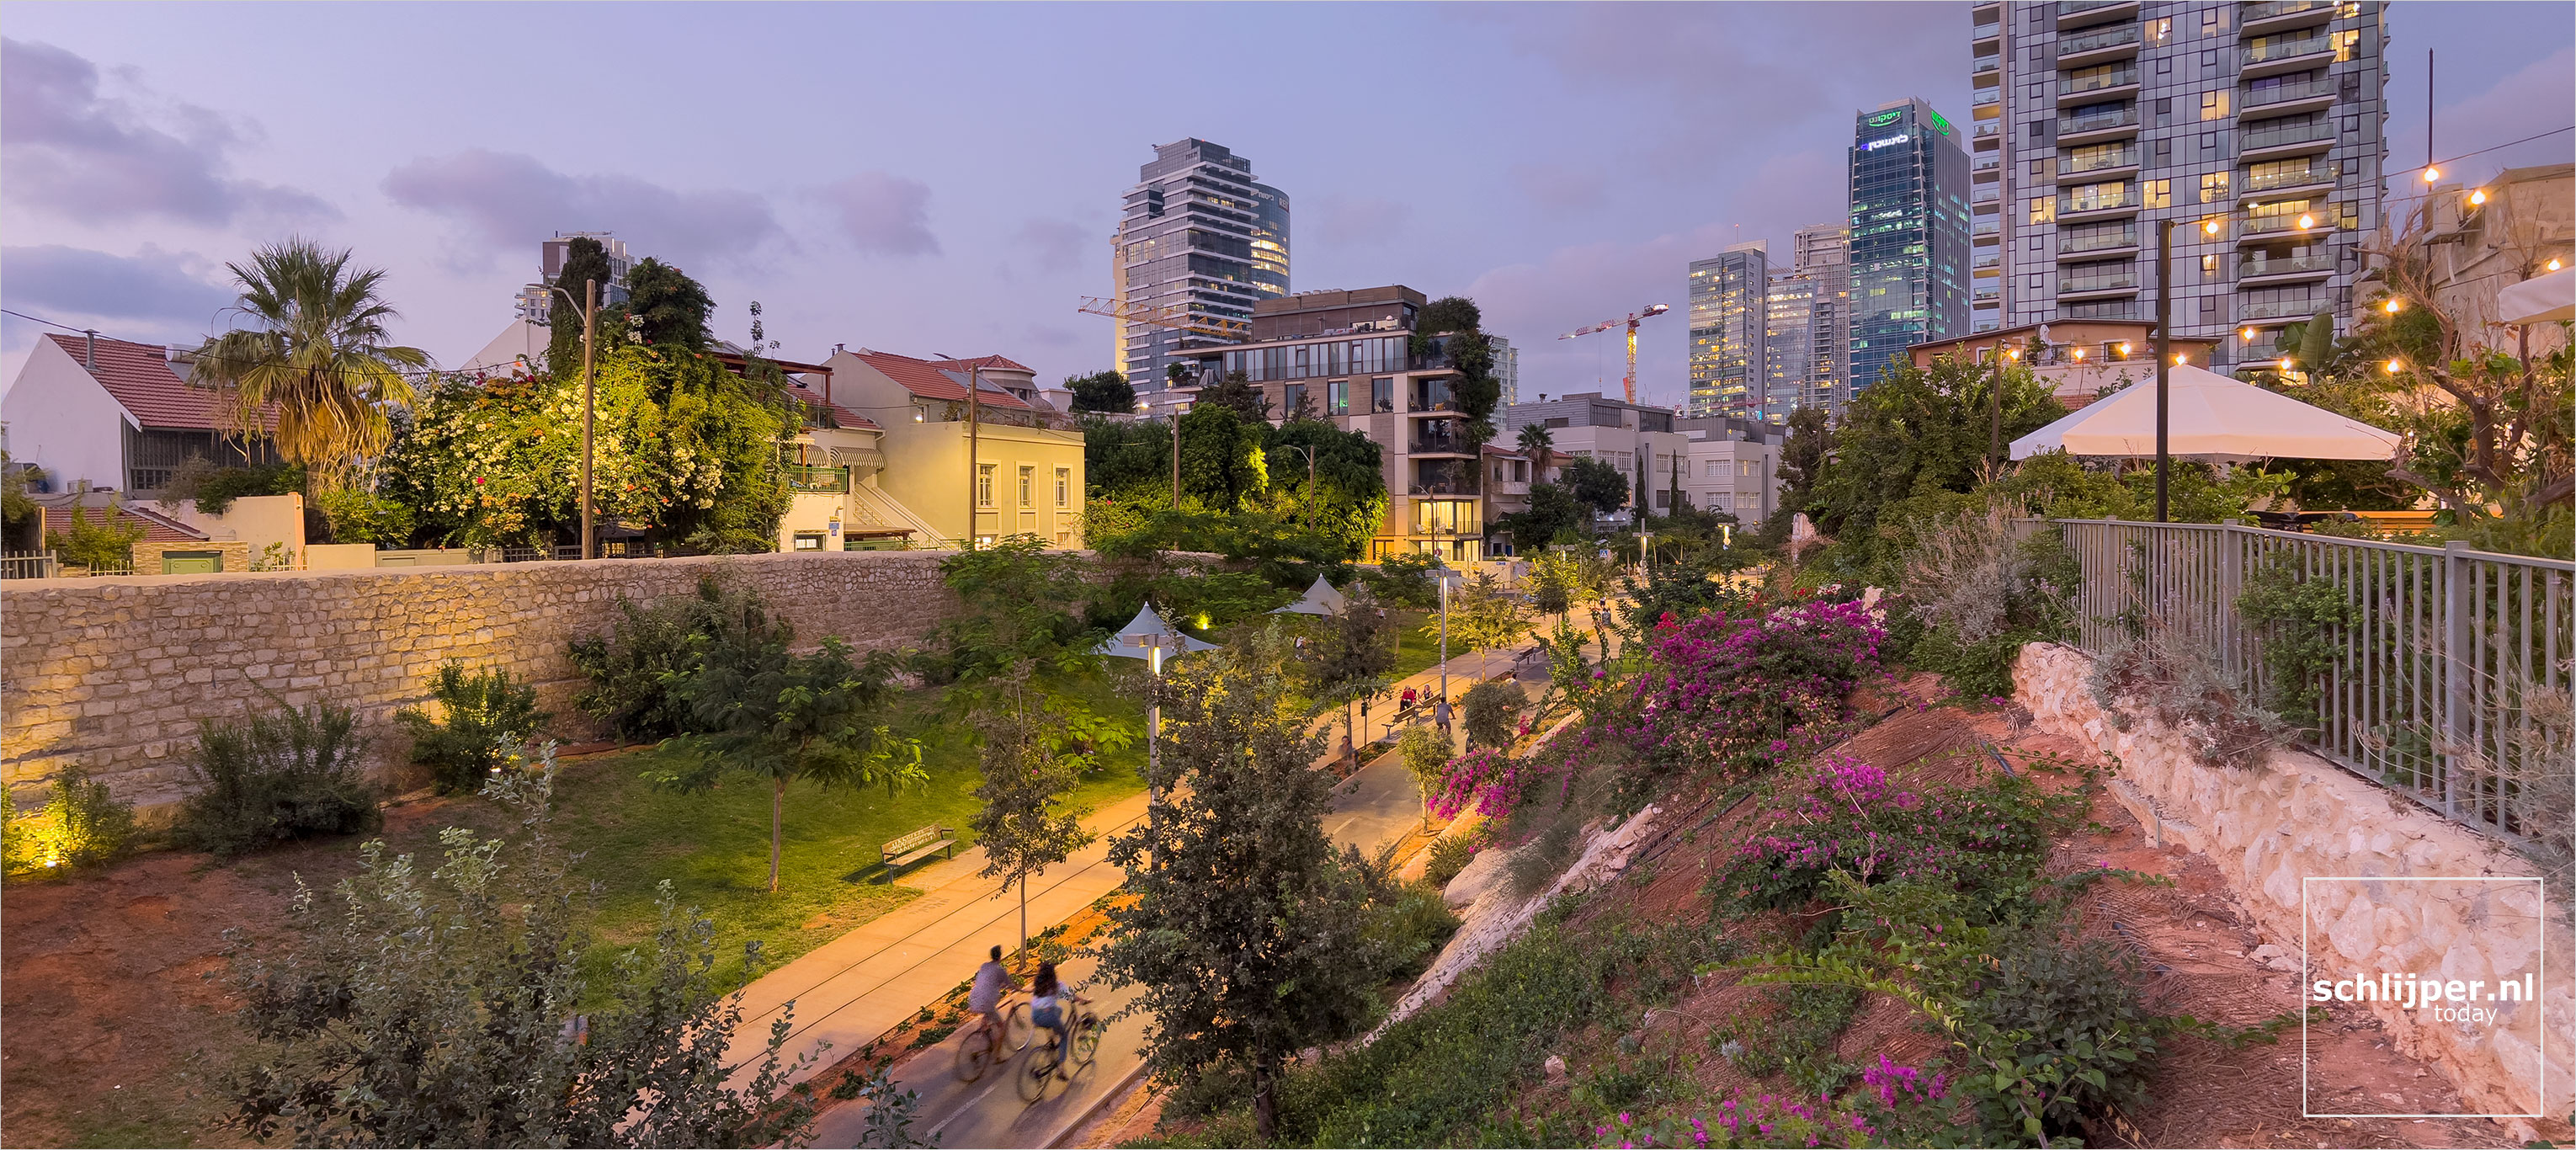 Israel, Tel Aviv, 4 september 2022